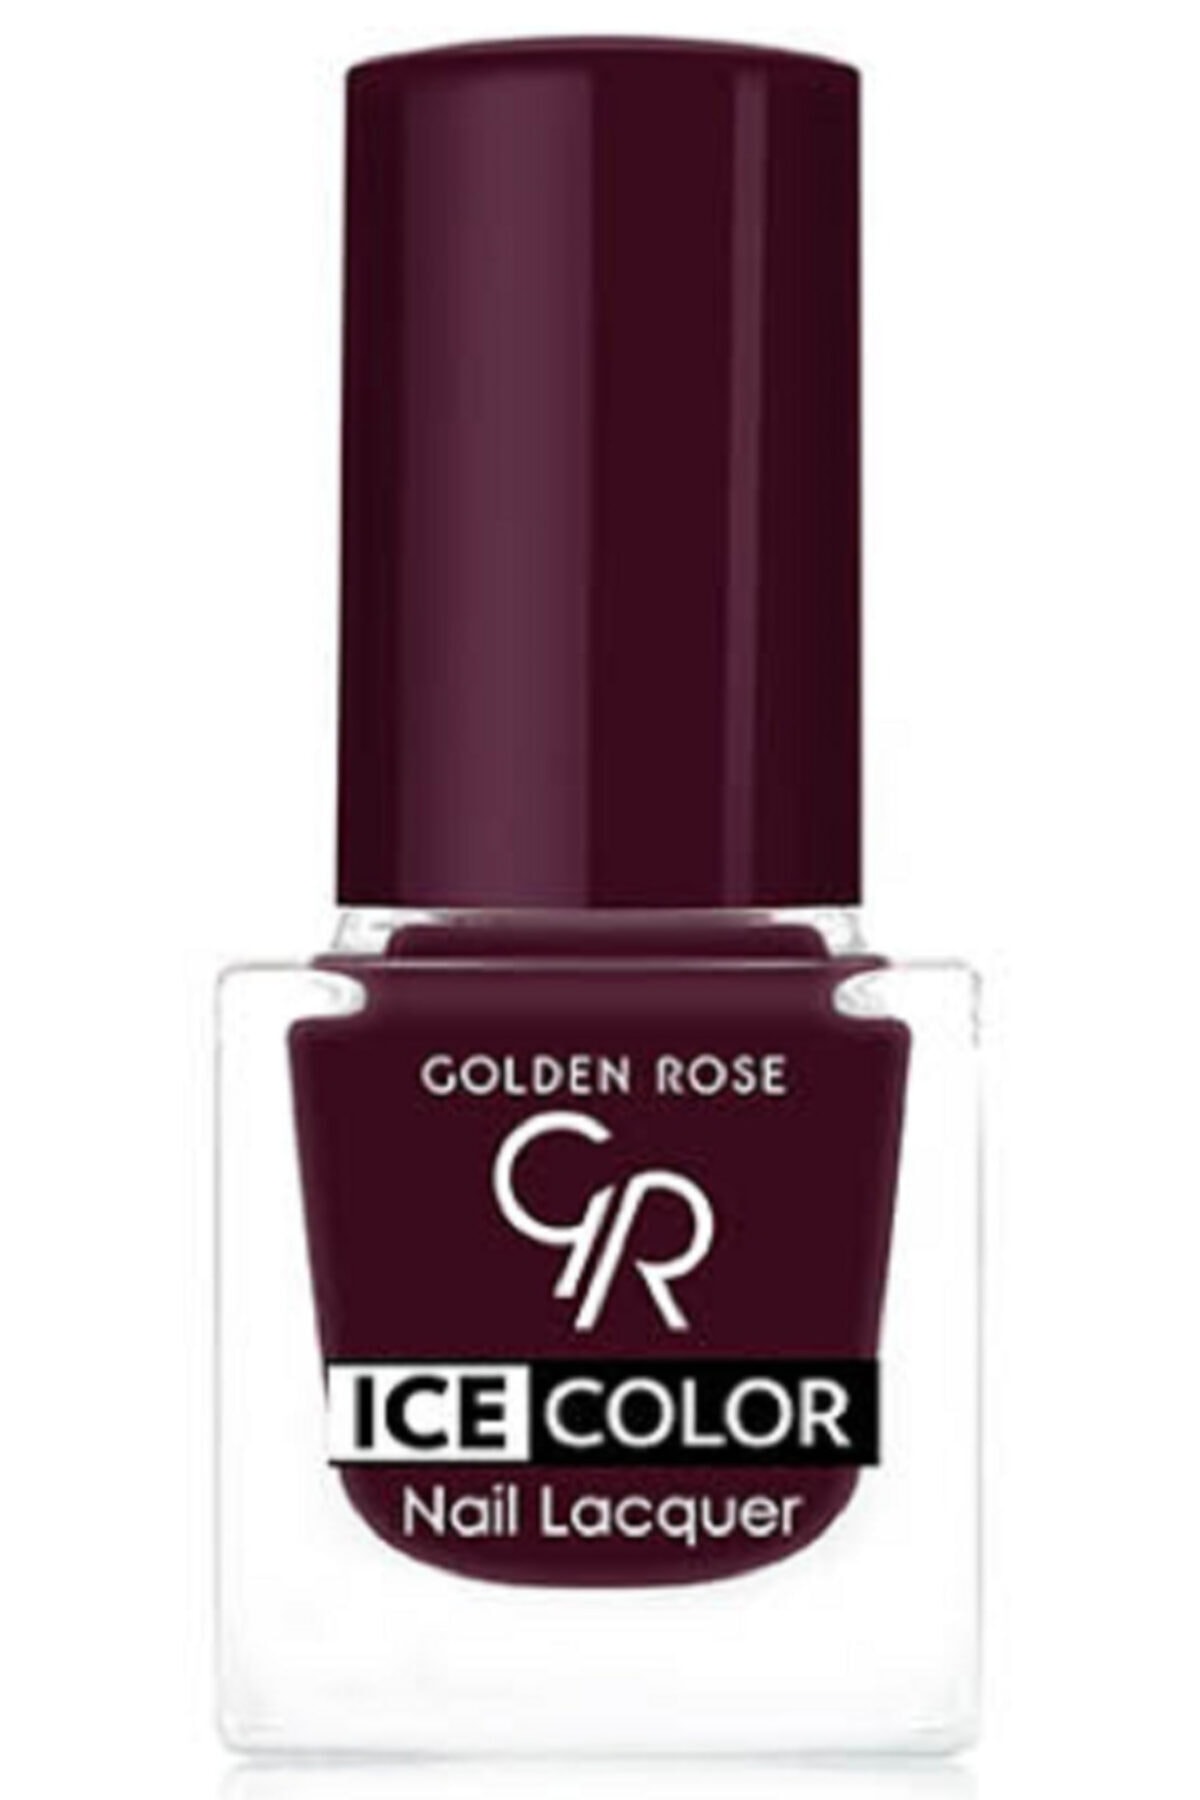 لاک ناخن یخی آیس چیک ICE شماره 157 رنگ خاکستری گلدن رز Golden Rose